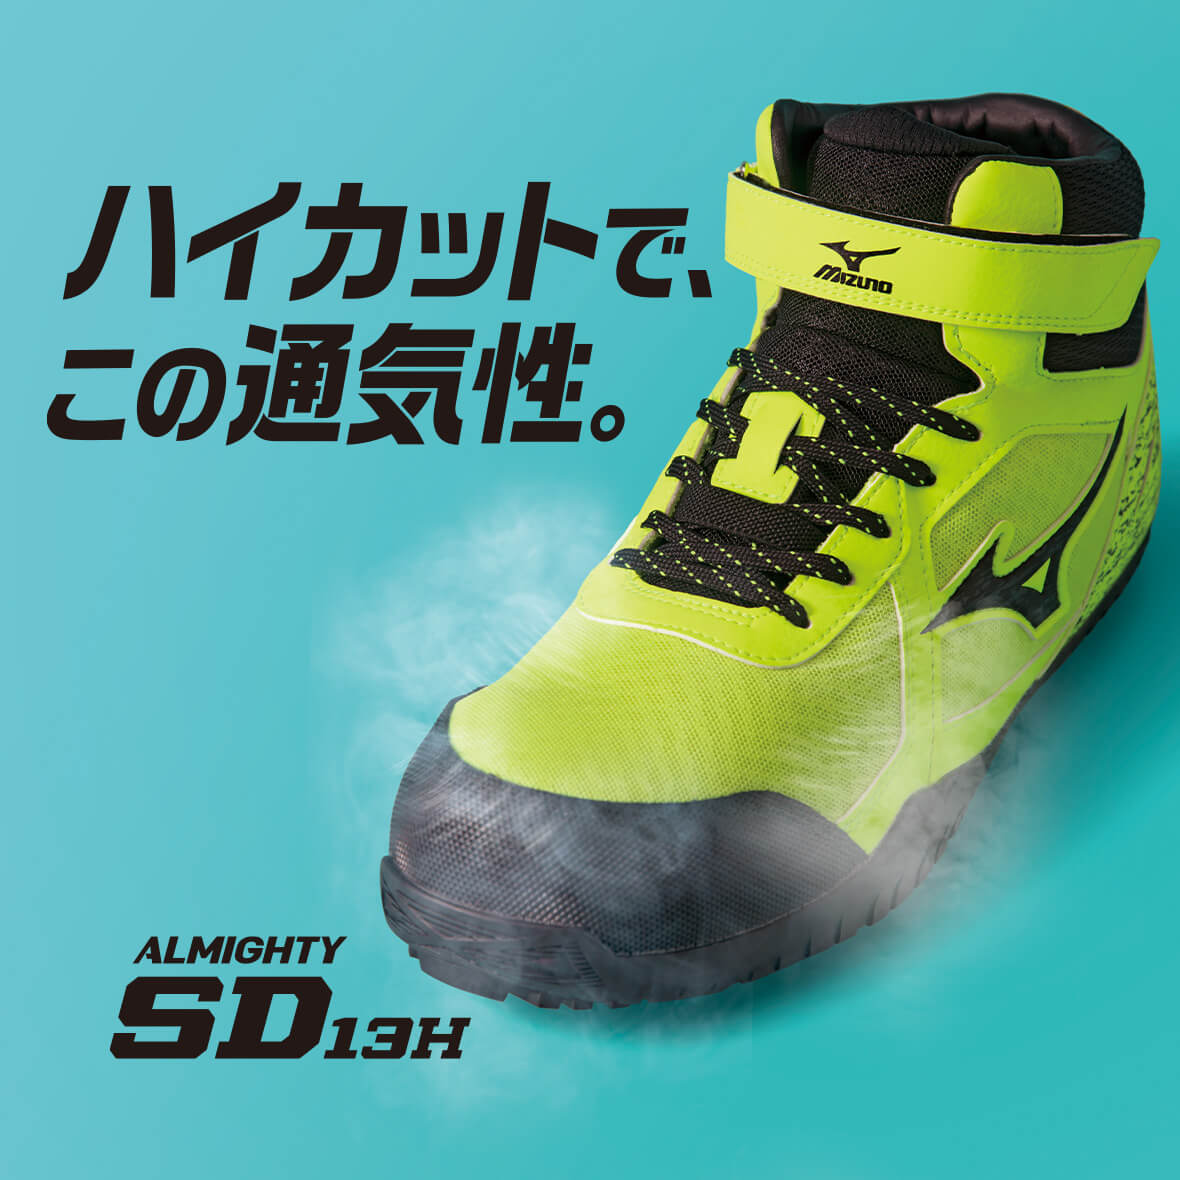 ミズノ安全靴 オールマイティ SDⅡ13H 27.0cm